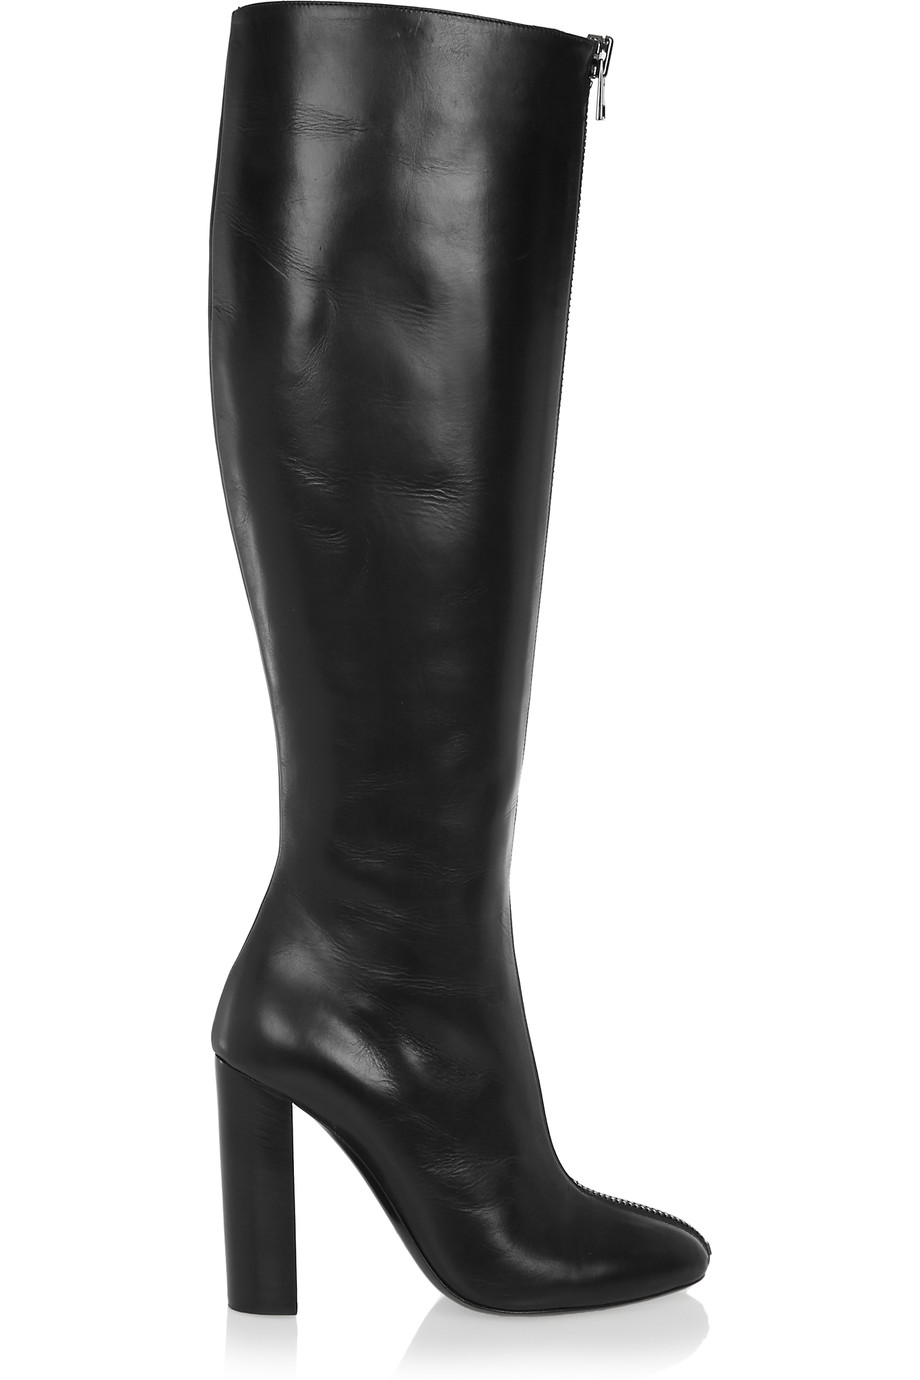 2017 Жените Црна Над Коленото Високи Чизми Дами Круг Пети Буци Пета Пред Патент Висока Пета Стилски Зимски Чевли Плус Големина